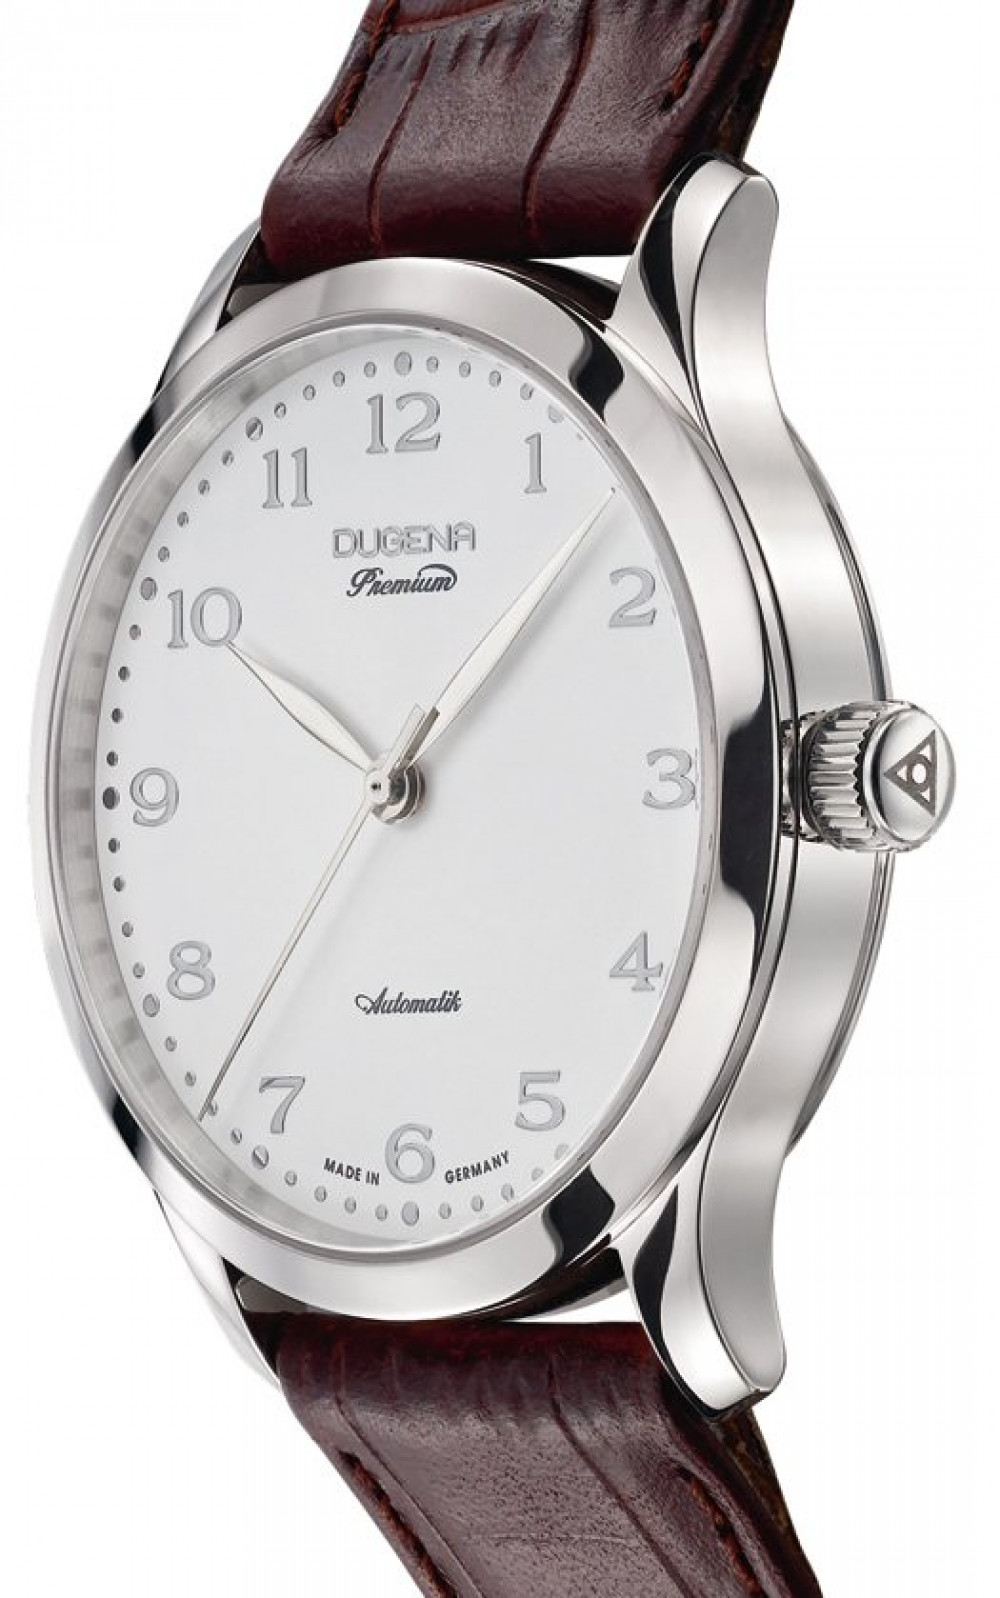 Zegarek firmy Dugena, model Gamma 2